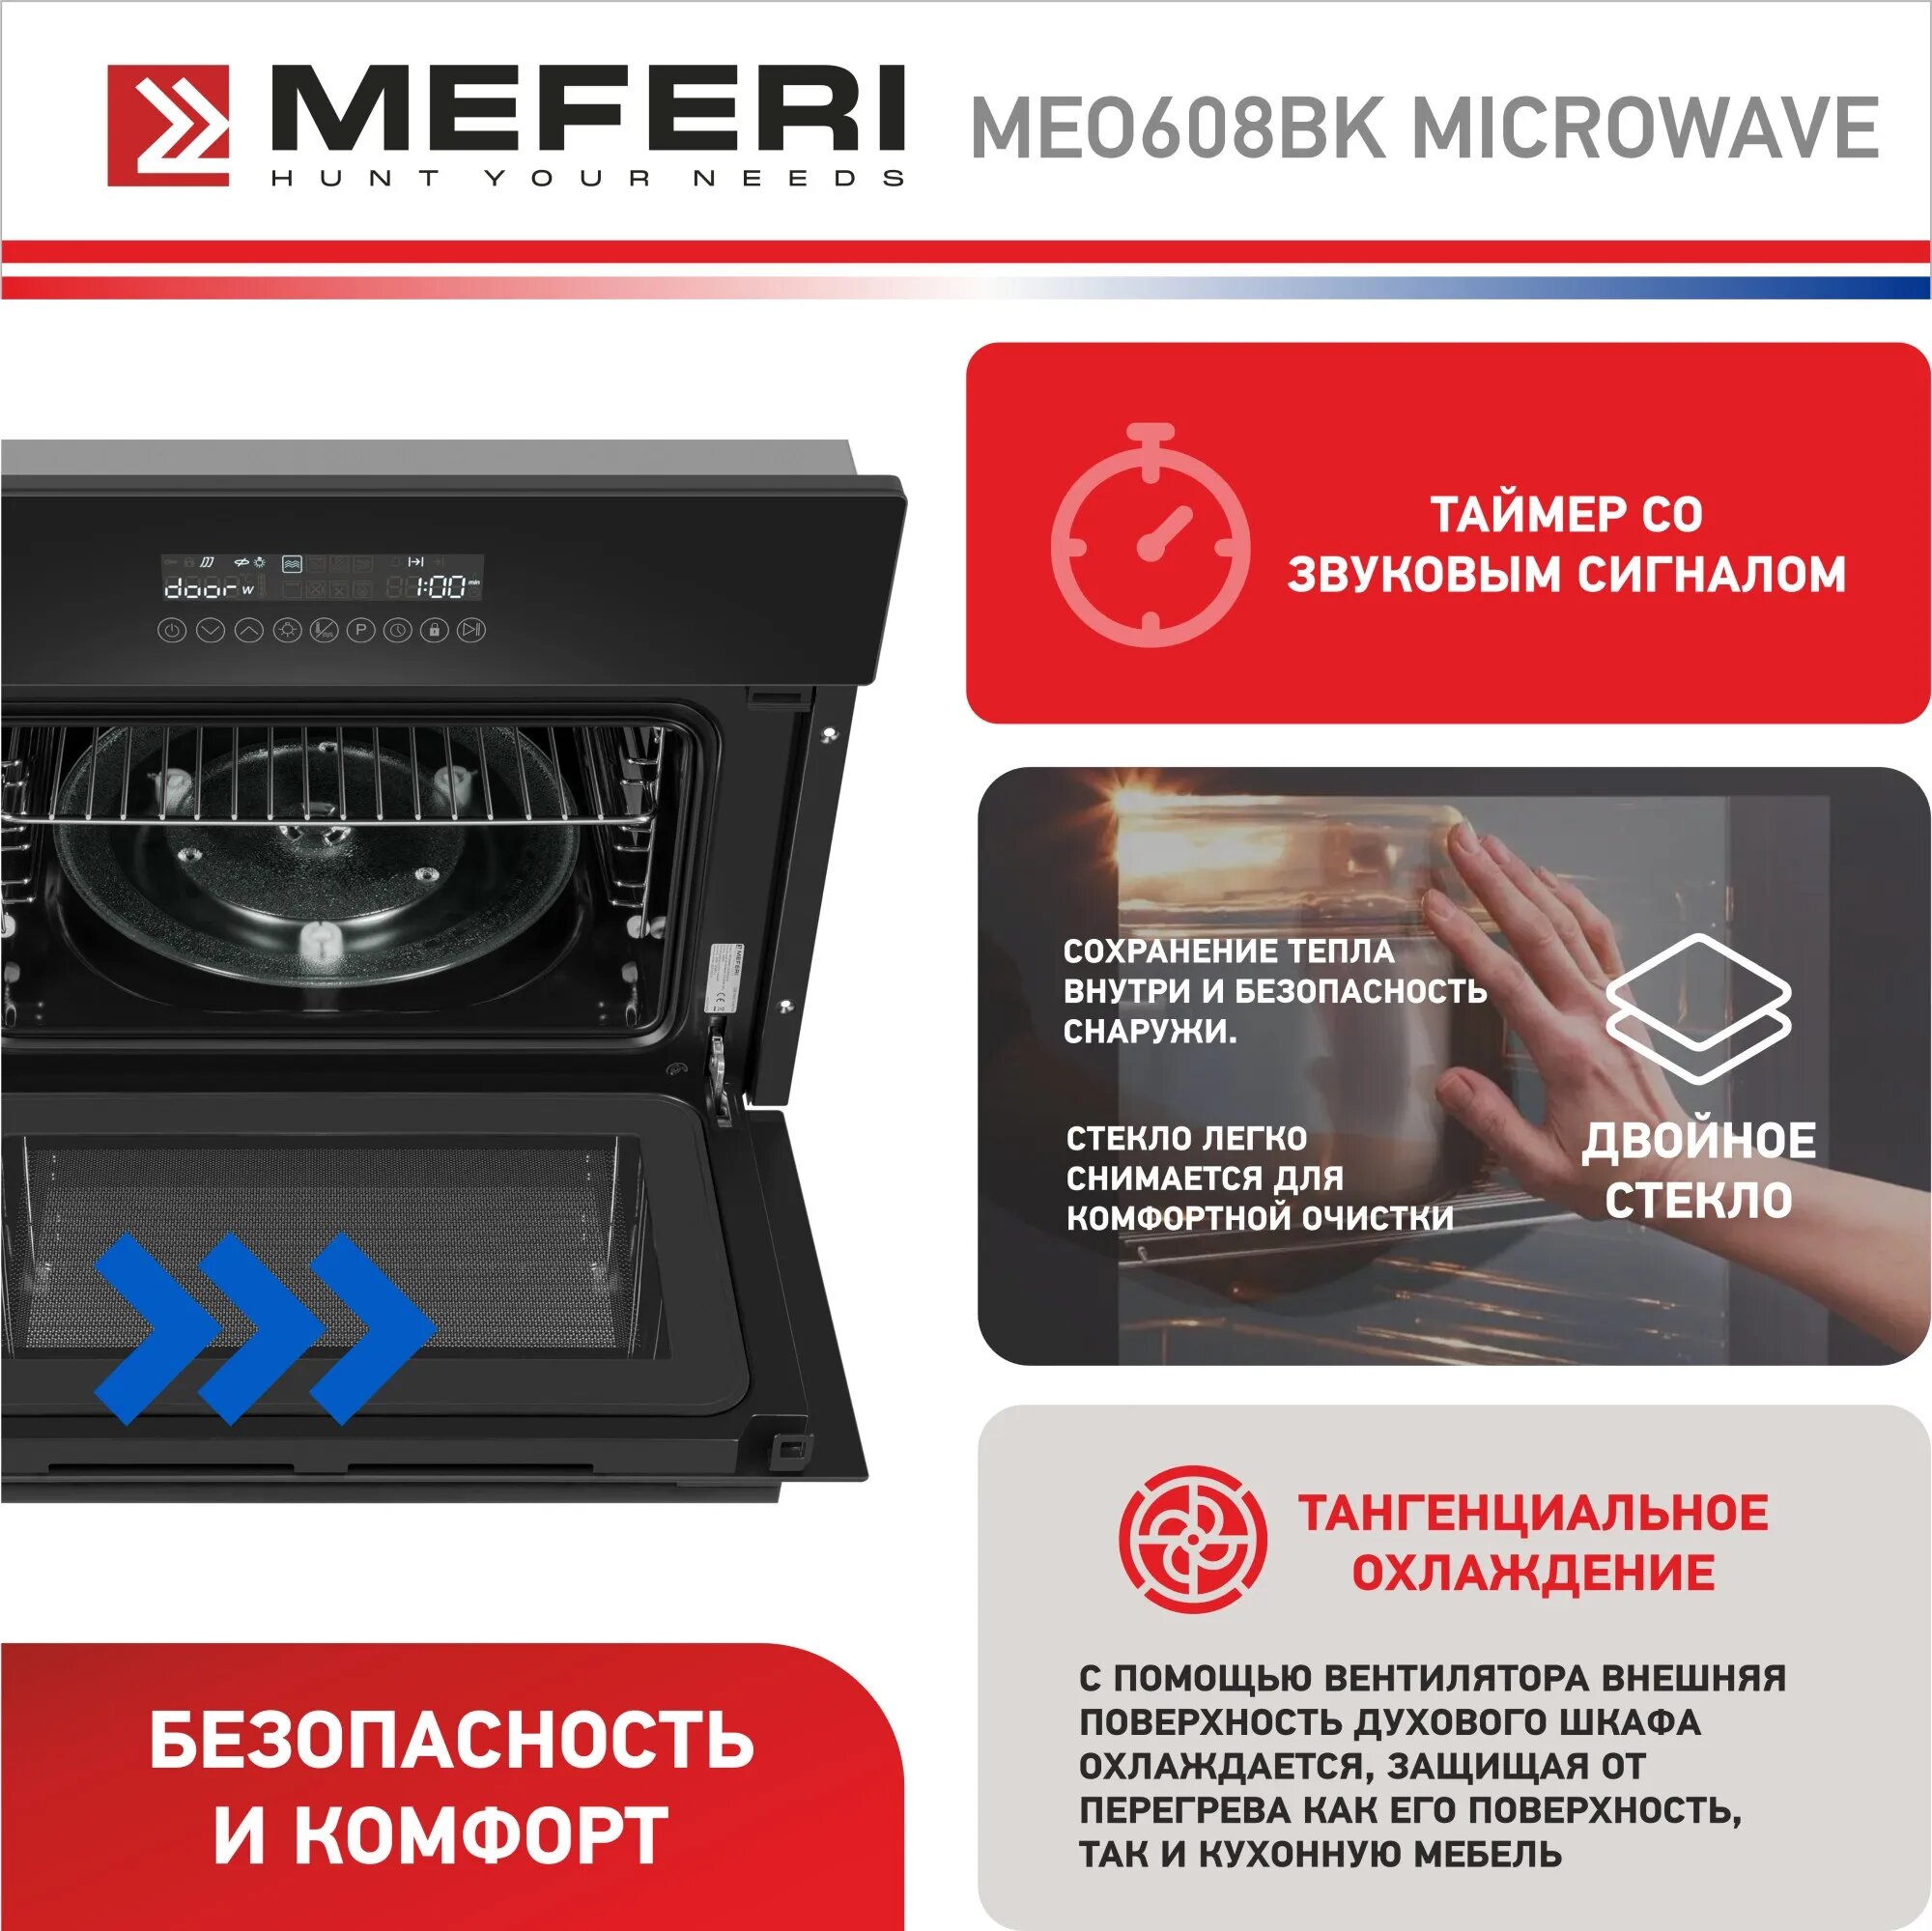 Электрический духовой шкаф Meferi MEO608BK MICROWAVE